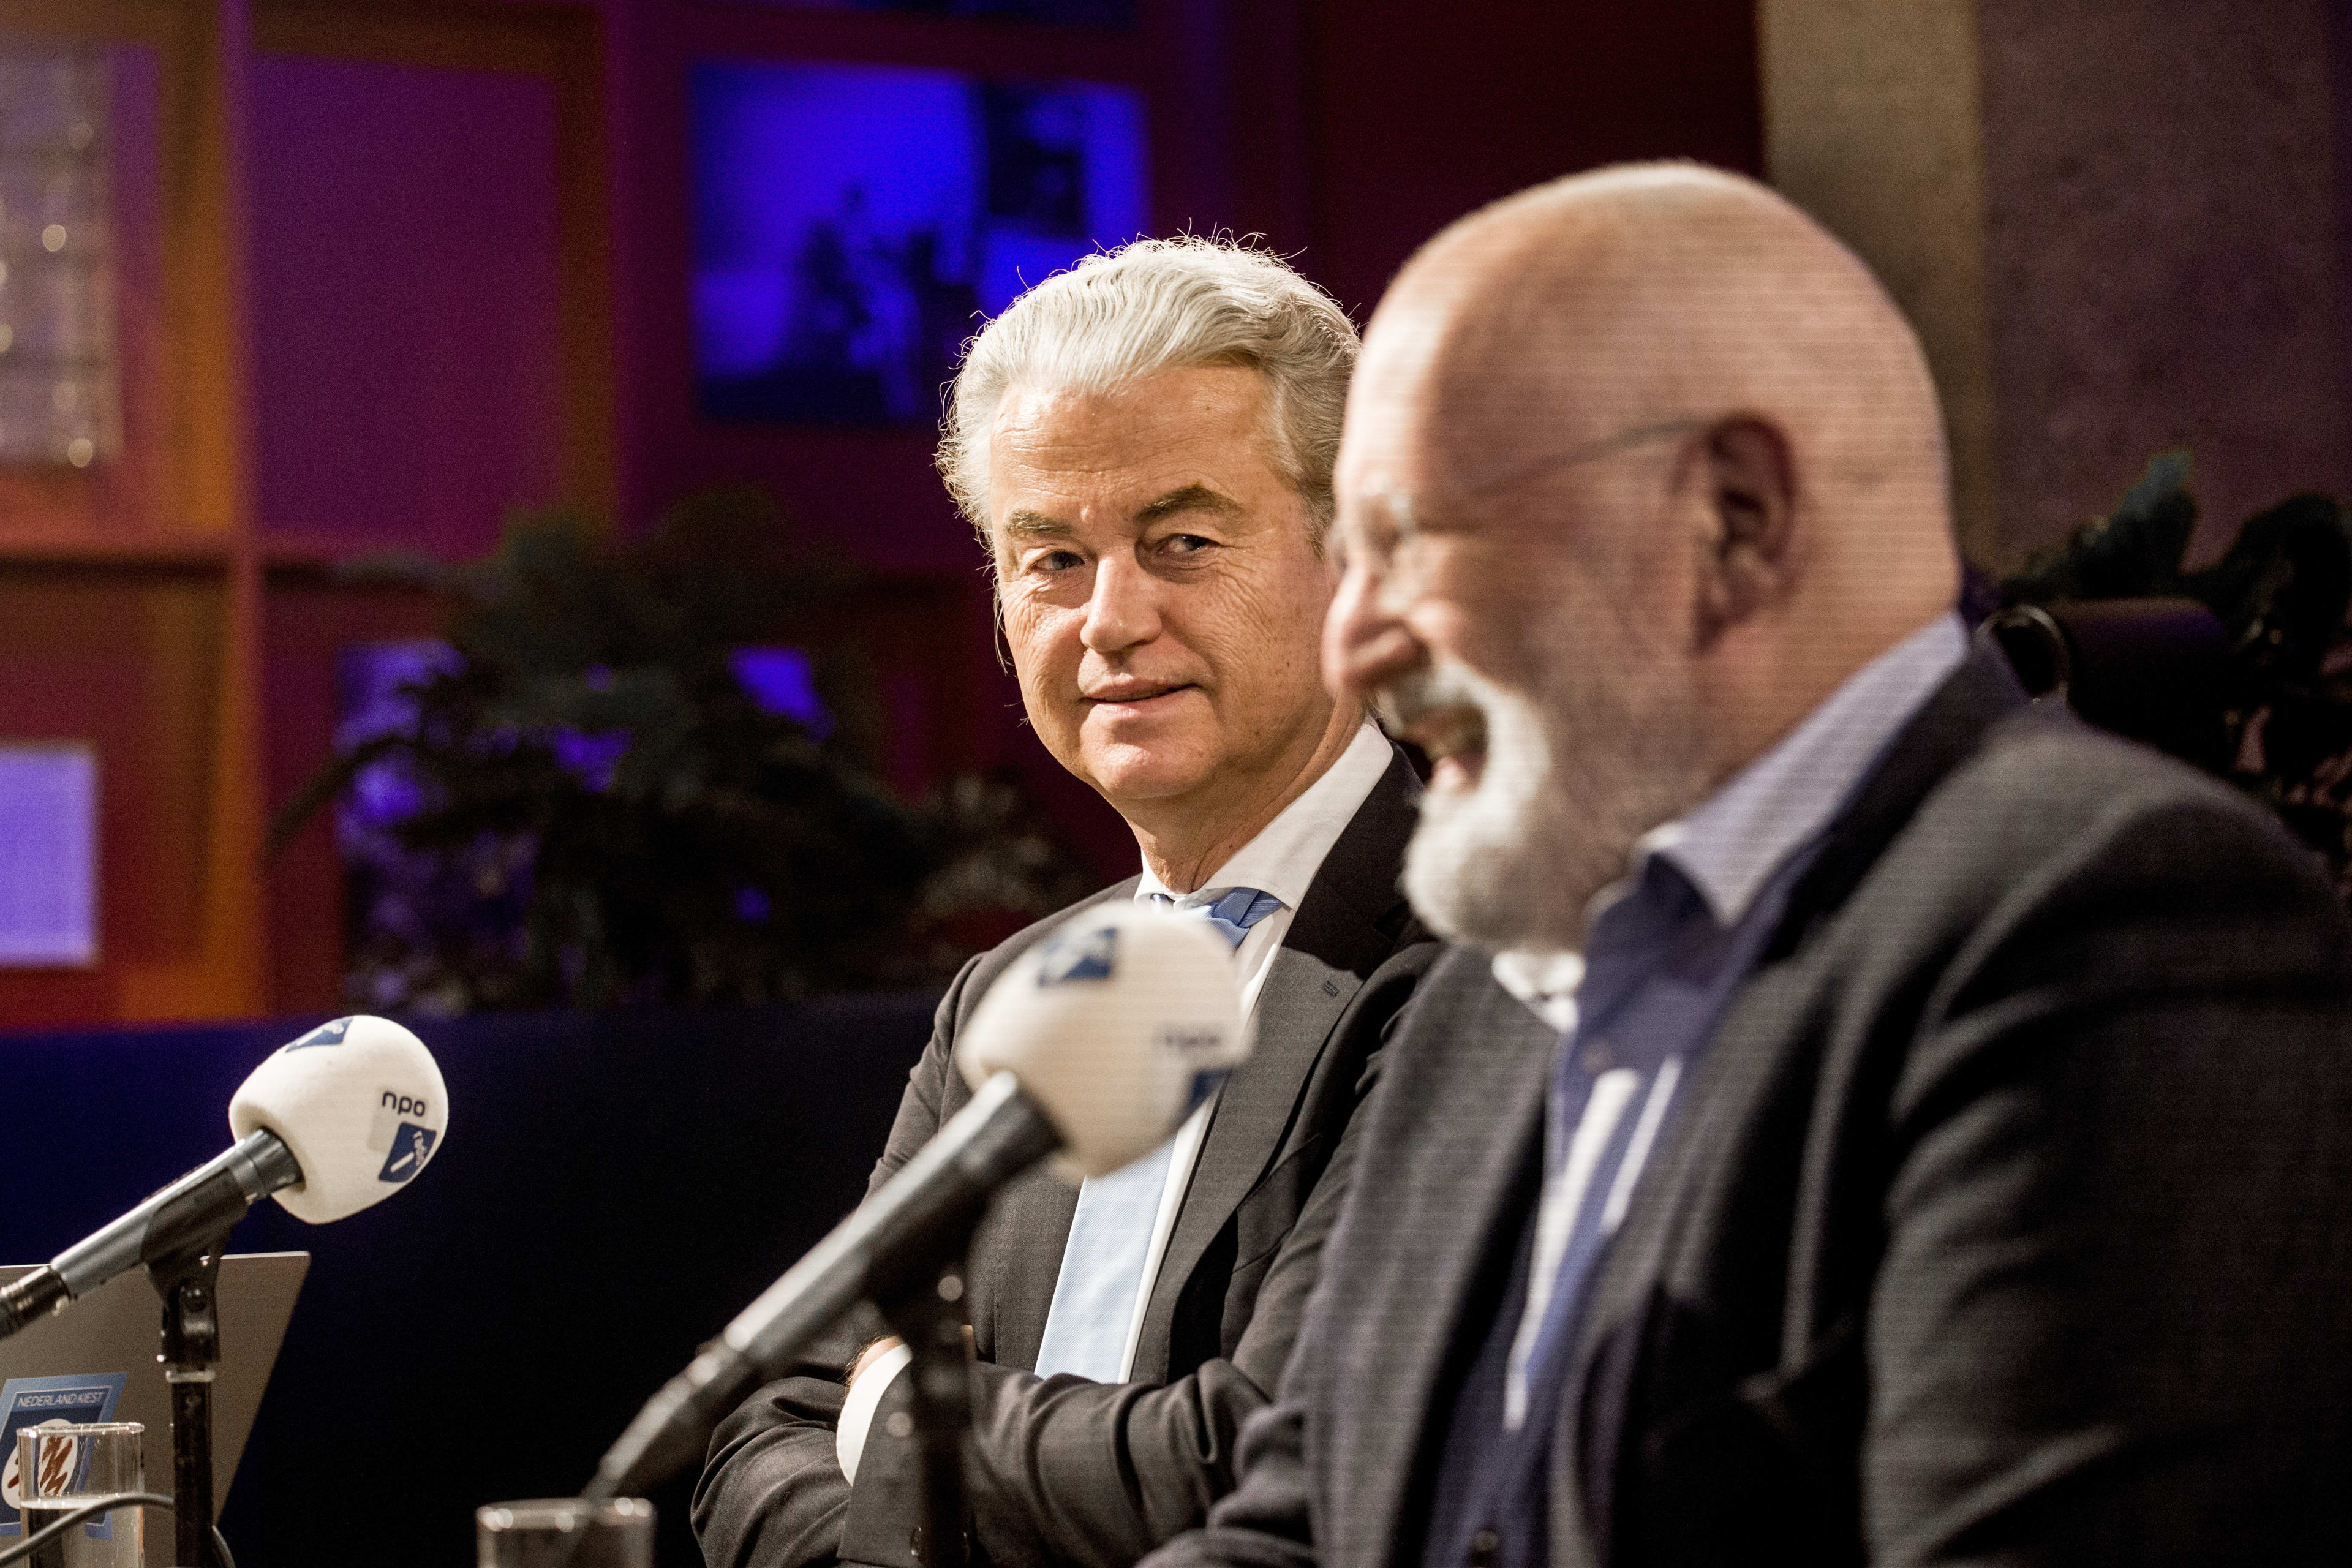 OM vindt vermeende bedreiging Timmermans aan adres Wilders niet strafbaar